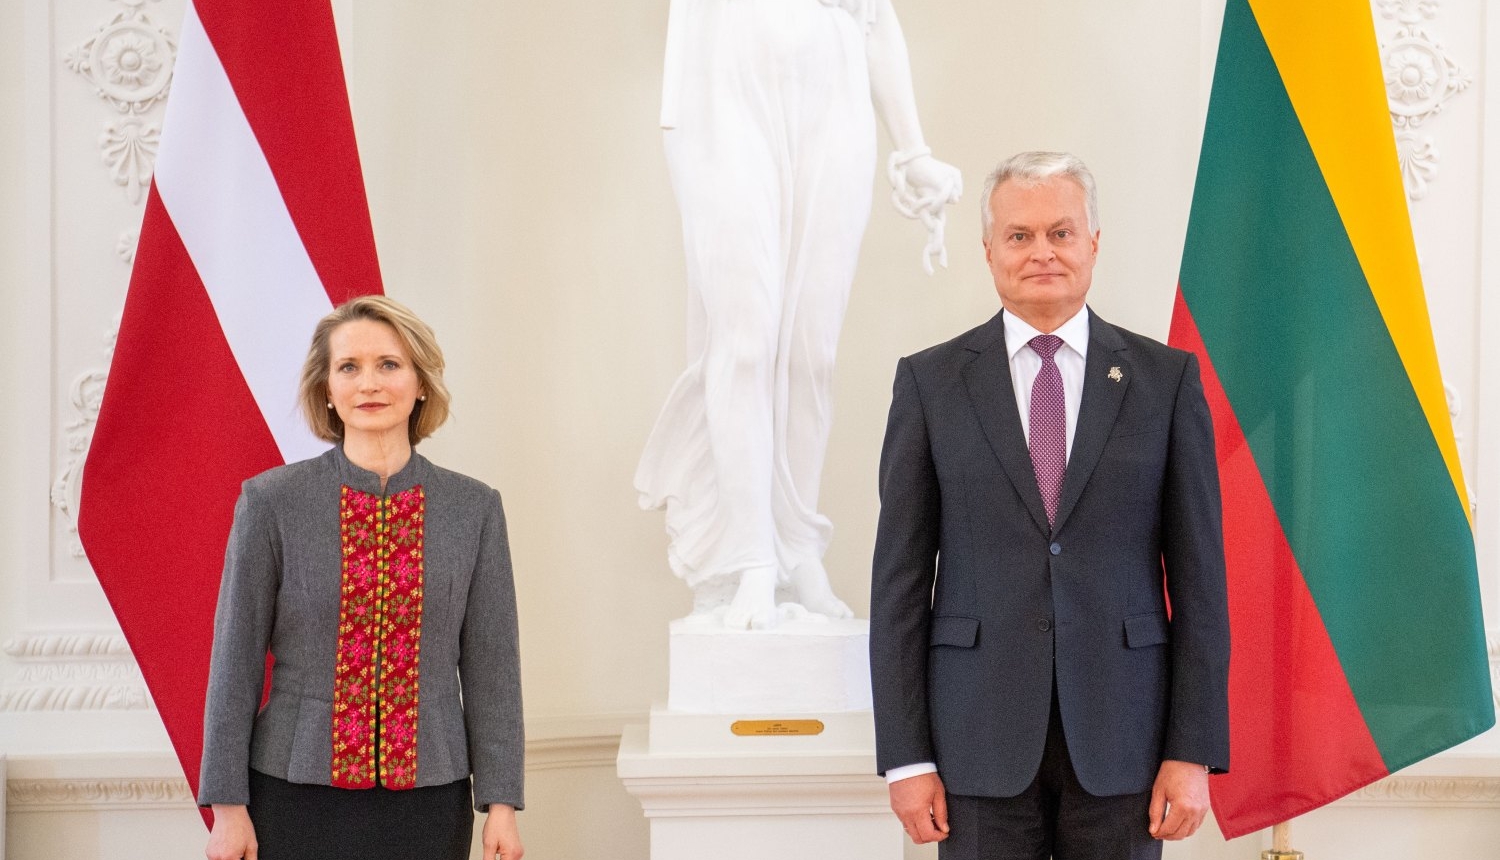 Latvijas vēstniece Solveiga Silkalna iesniedz akreditācijas vēstuli Lietuvas prezidentam